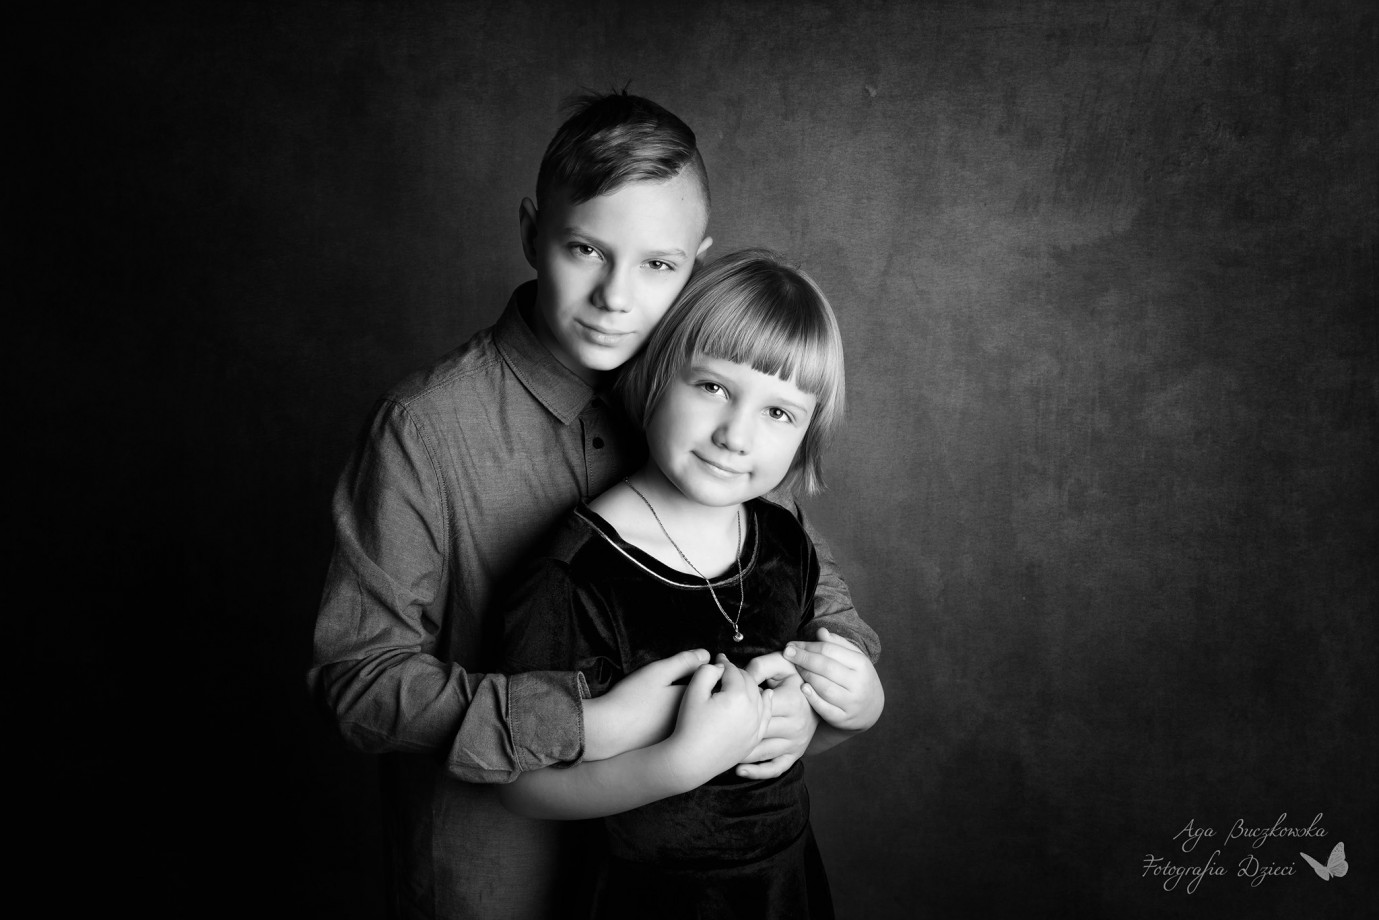 fotograf gdansk agnieszka-buczkowska portfolio zdjecia rodzinne fotografia rodzinna sesja